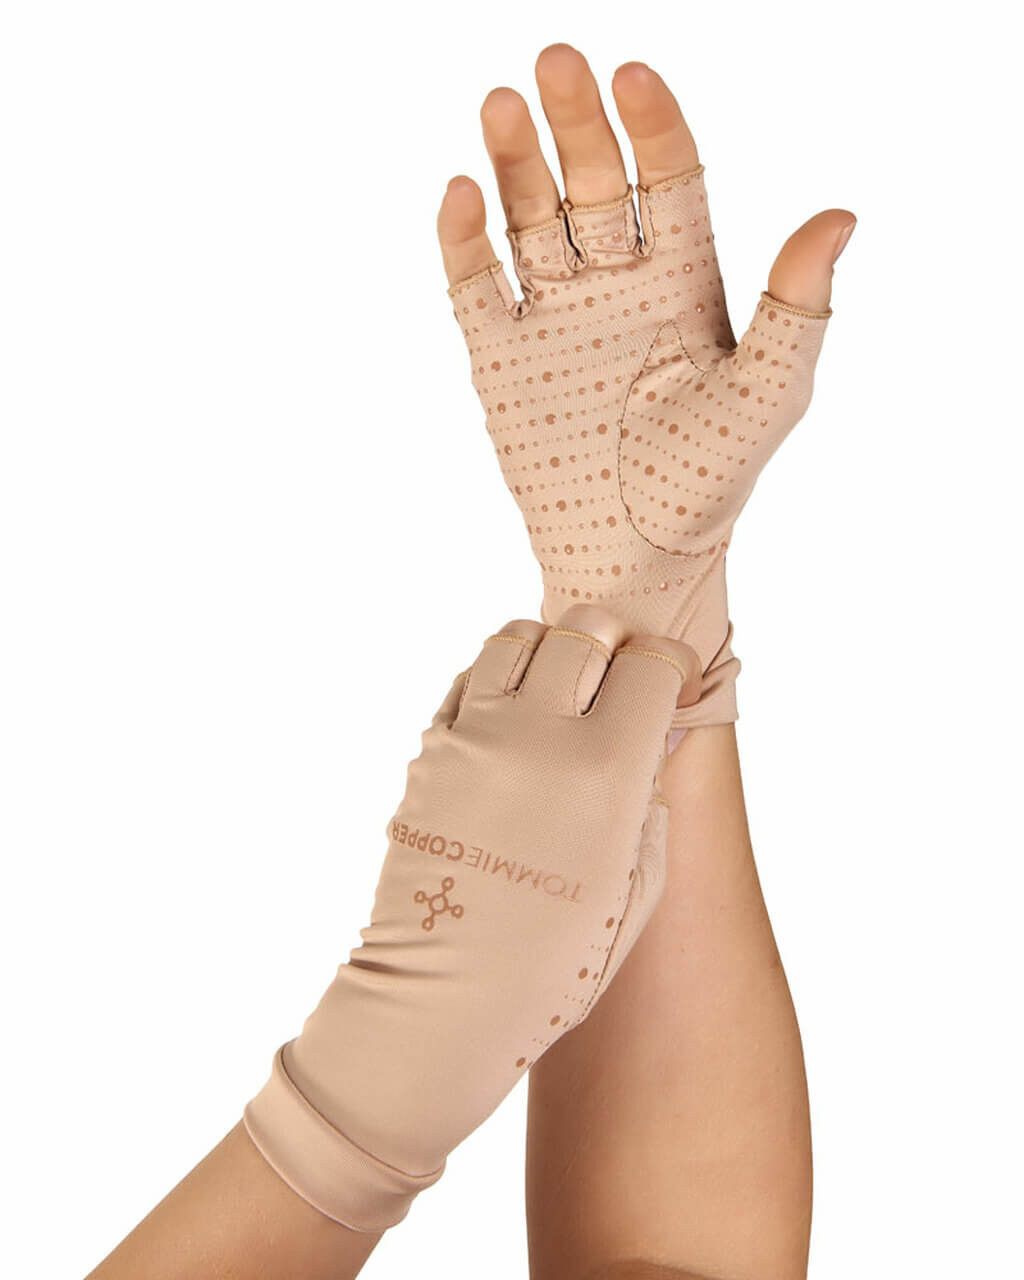 Leather Gloves Black Fingerless Driving Fashion Men Women Half Finger  Gloves New